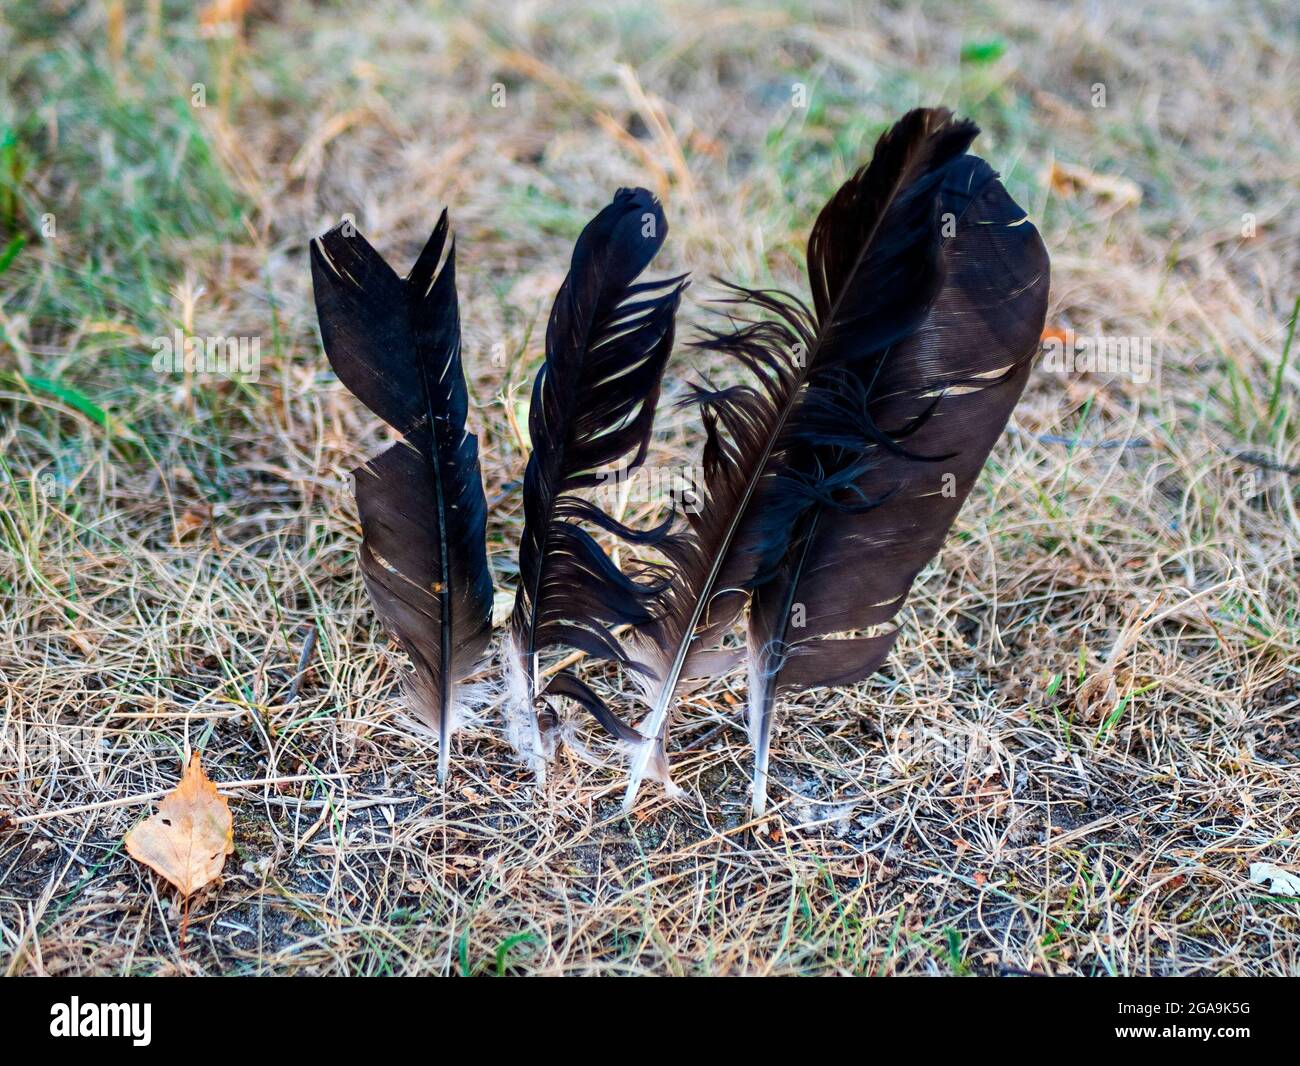 Quattro piume nere dell'uccello forzate nel terreno. Concetto di segno, spiritualità o stregoneria Foto Stock